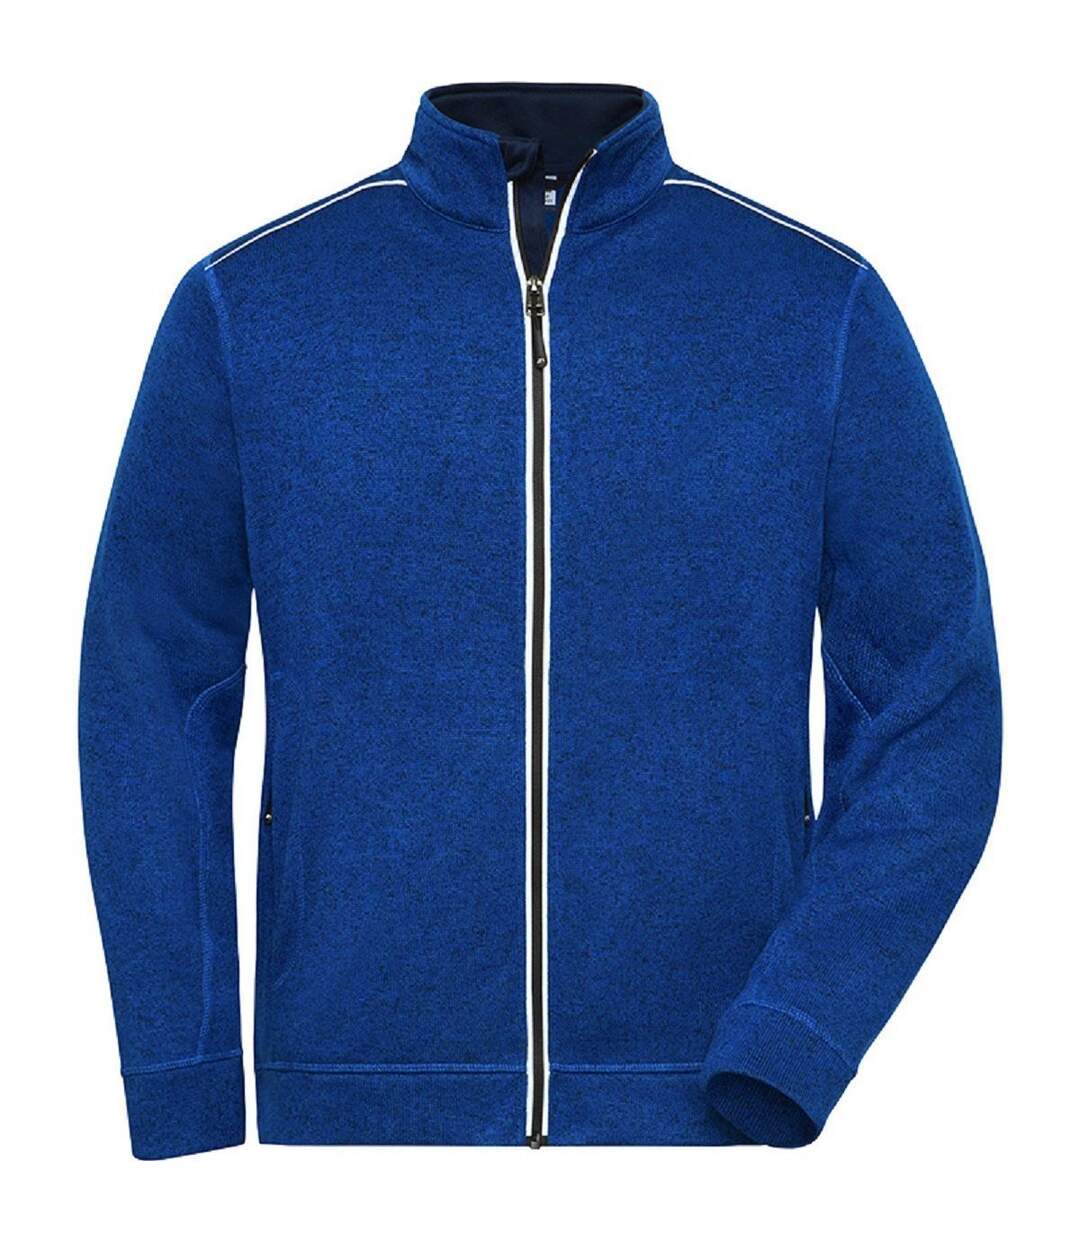 Veste zippée polaire workwear GRANDES TAILLES - homme - JN898C - bleu roi foncé